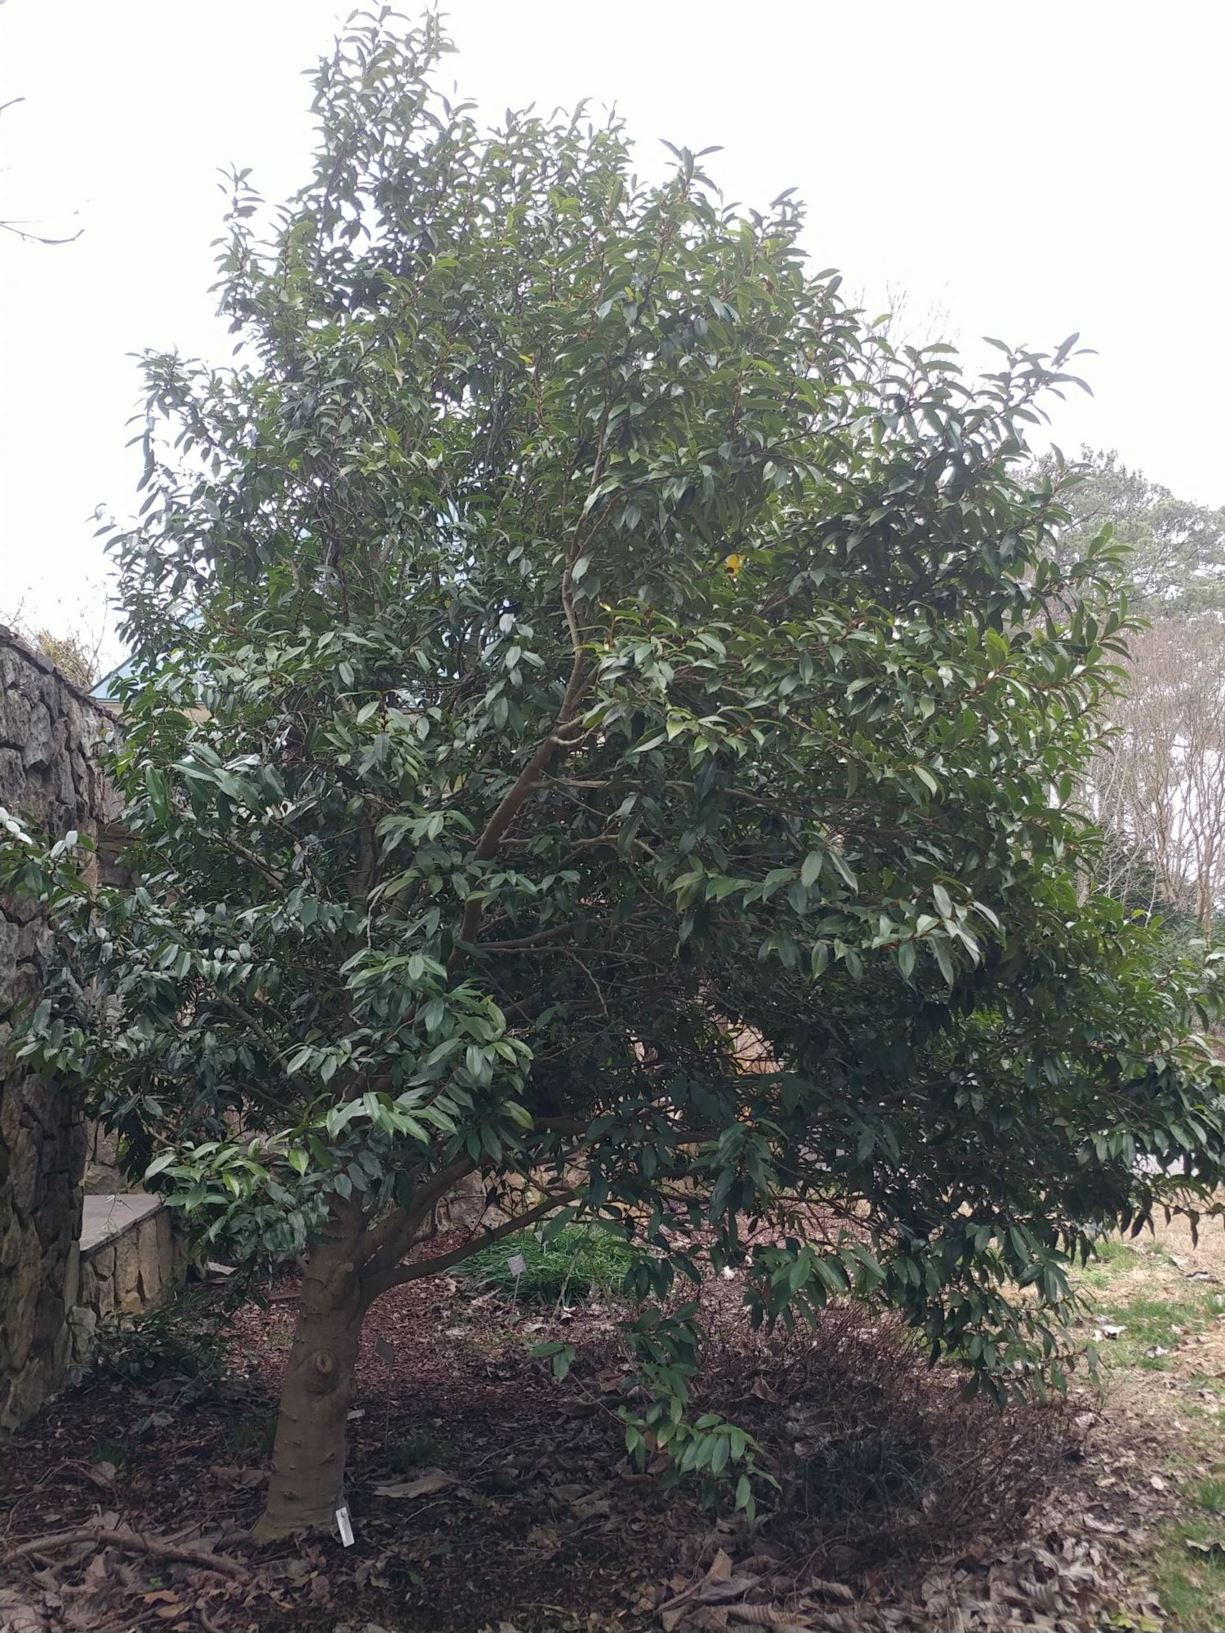 Magnolia figo var. skinneriana × crassipes - hybrid magnolia